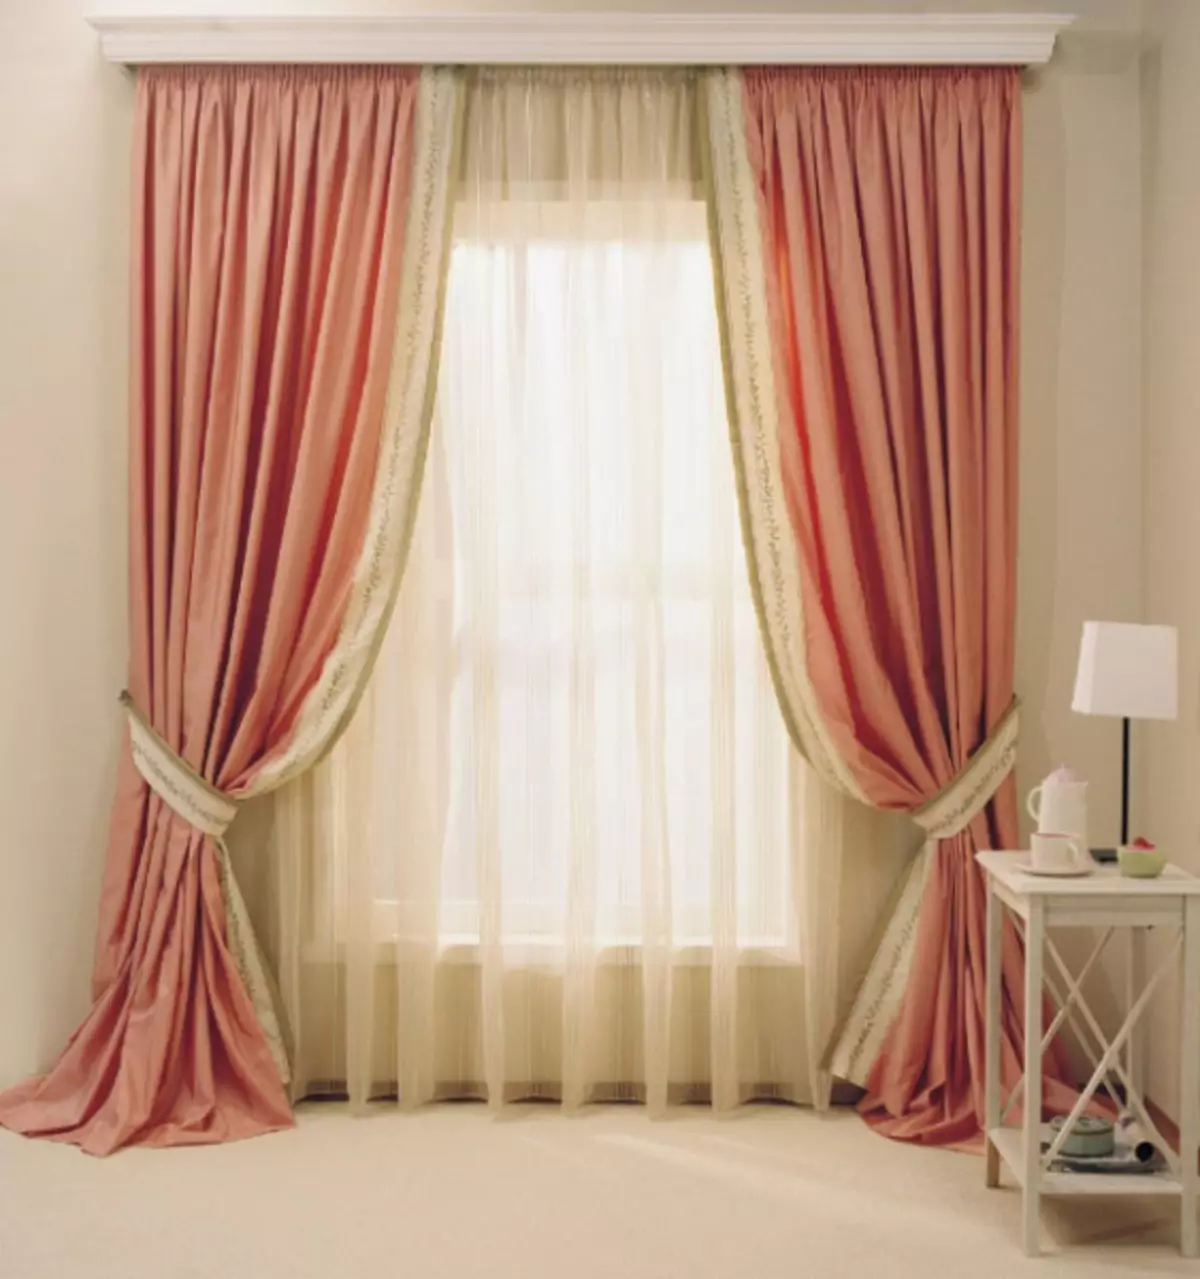 Hur man väljer ett material för gardiner: De bästa gardinväverna från Turkiet